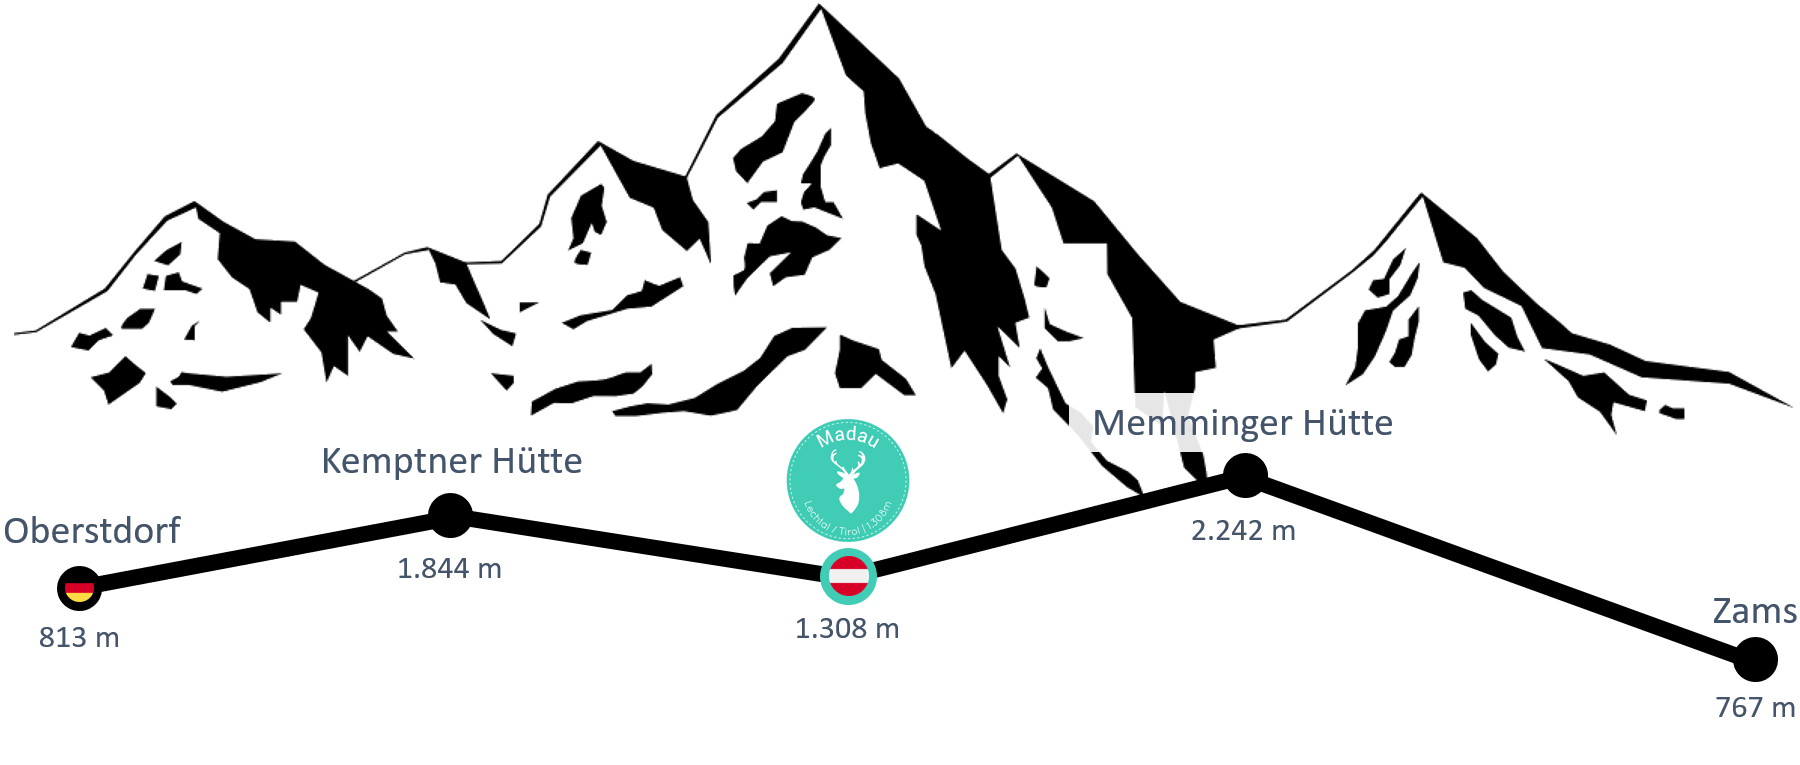 E5 Fernwanderweg Etappen-Übersicht - Teil 1 - Oberstdorf > Berggasthaus Hermine Madau > Zams